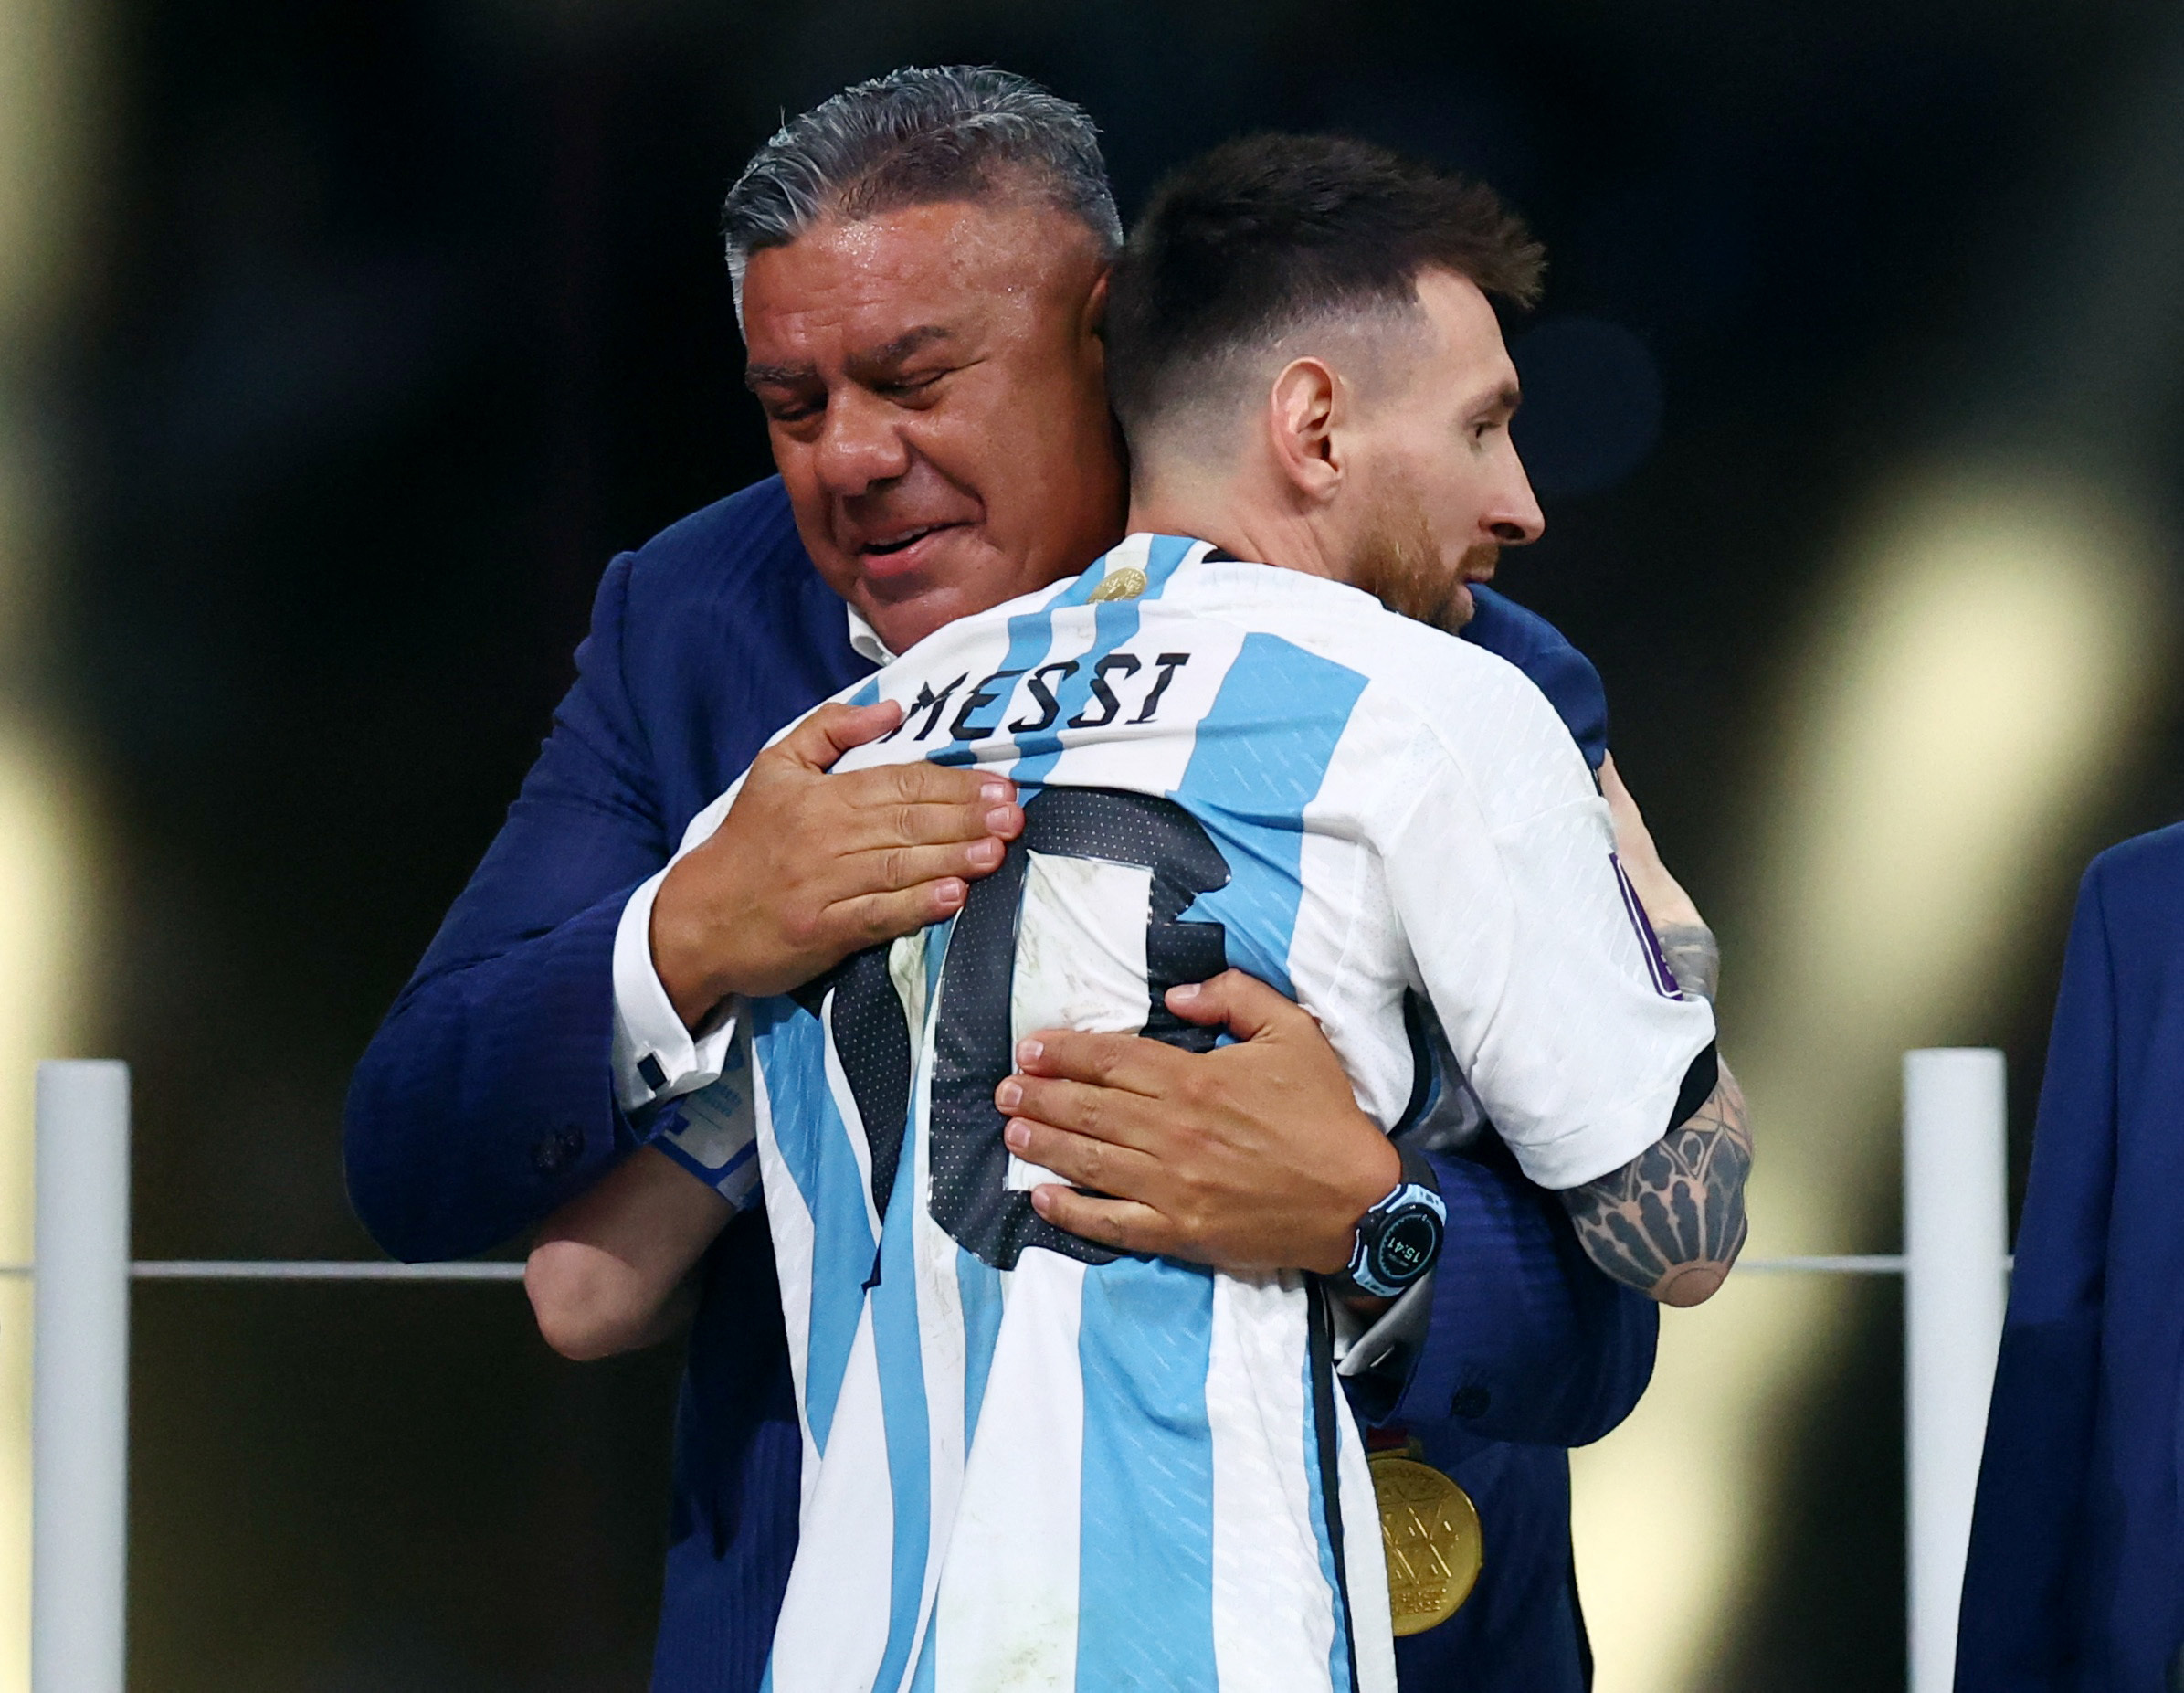 Tras la conquista de Argentina en Qatar, Chiqui Tapia sueña con que Messi desembarque en el fútbol argentino (REUTERS/Hannah Mckay)